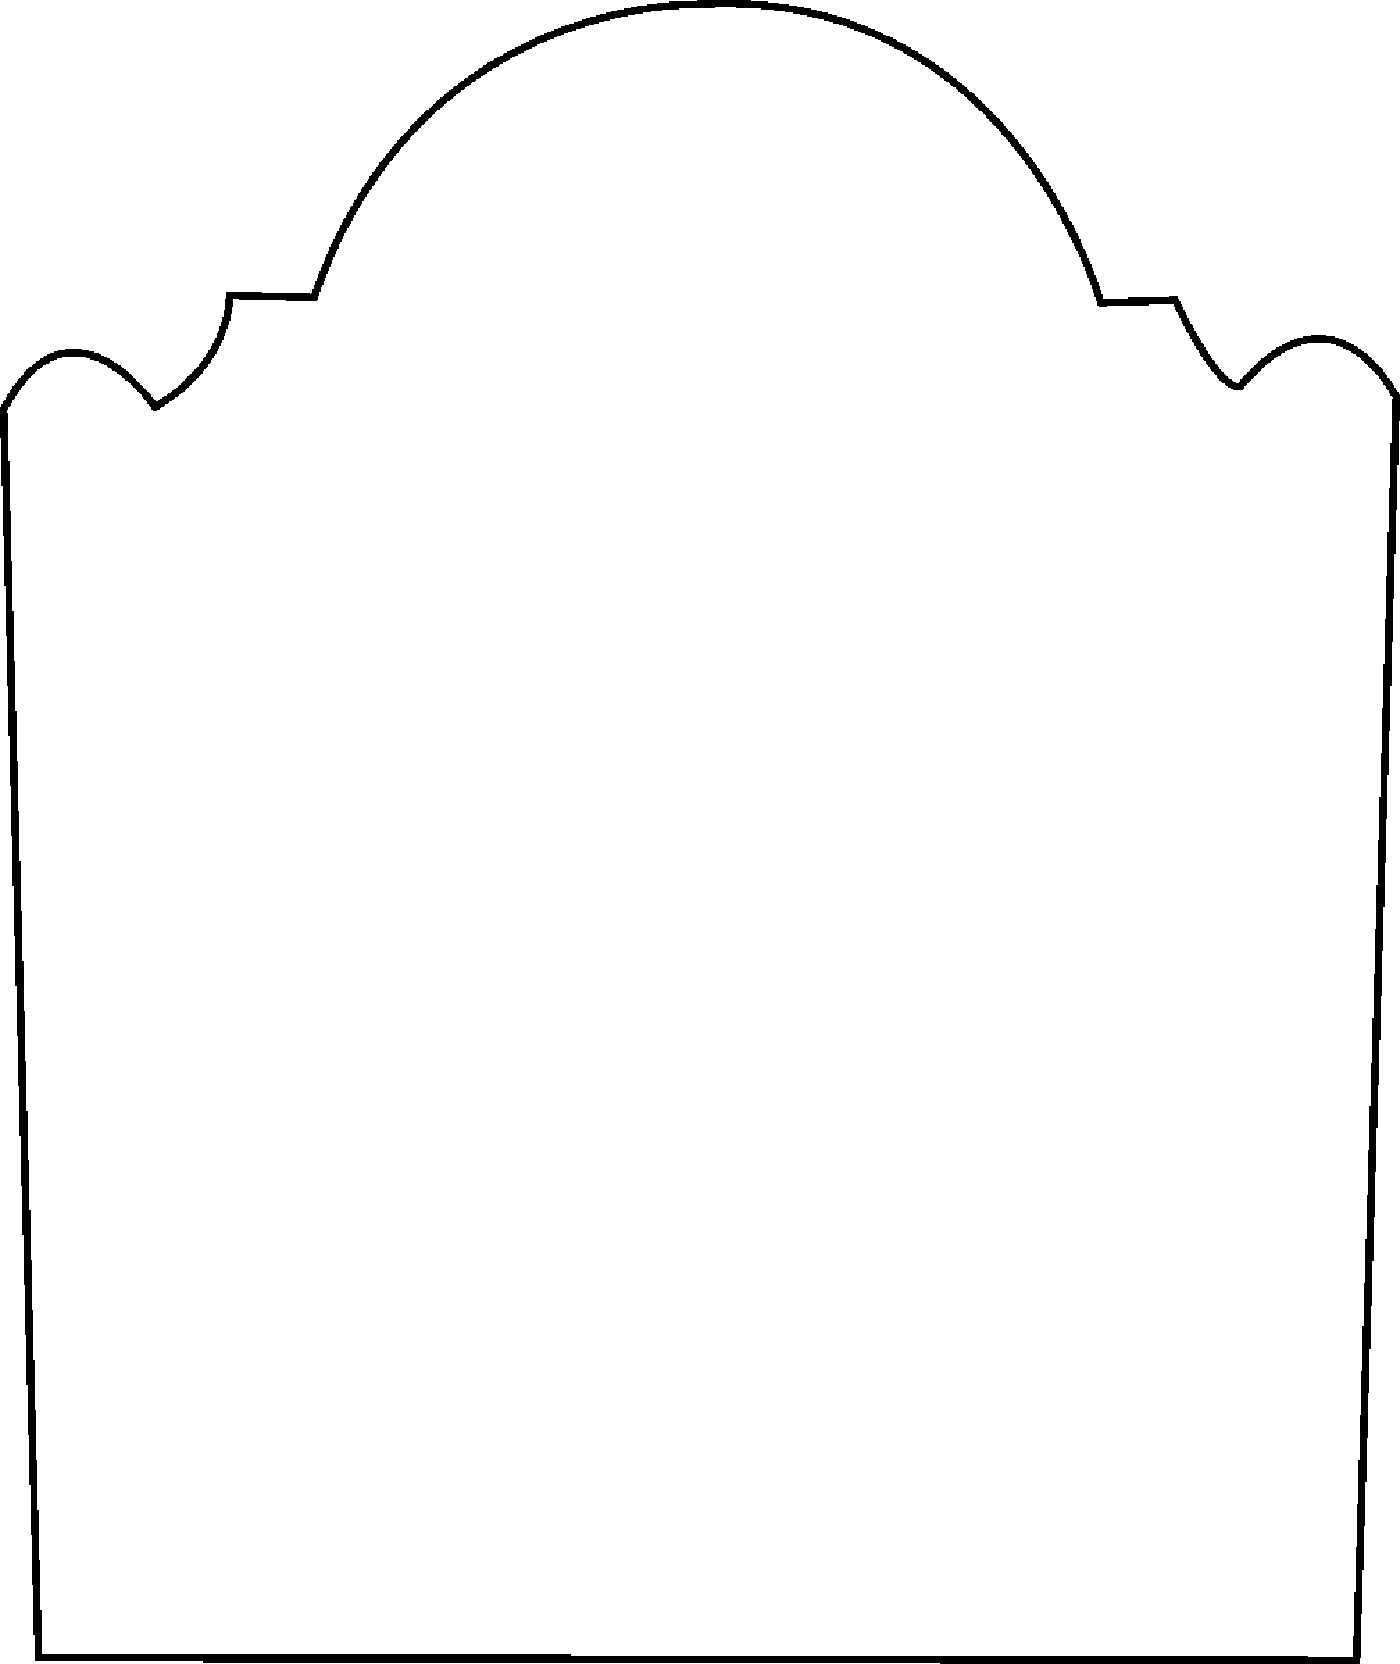 Blank tombstone clipart - ClipartFox